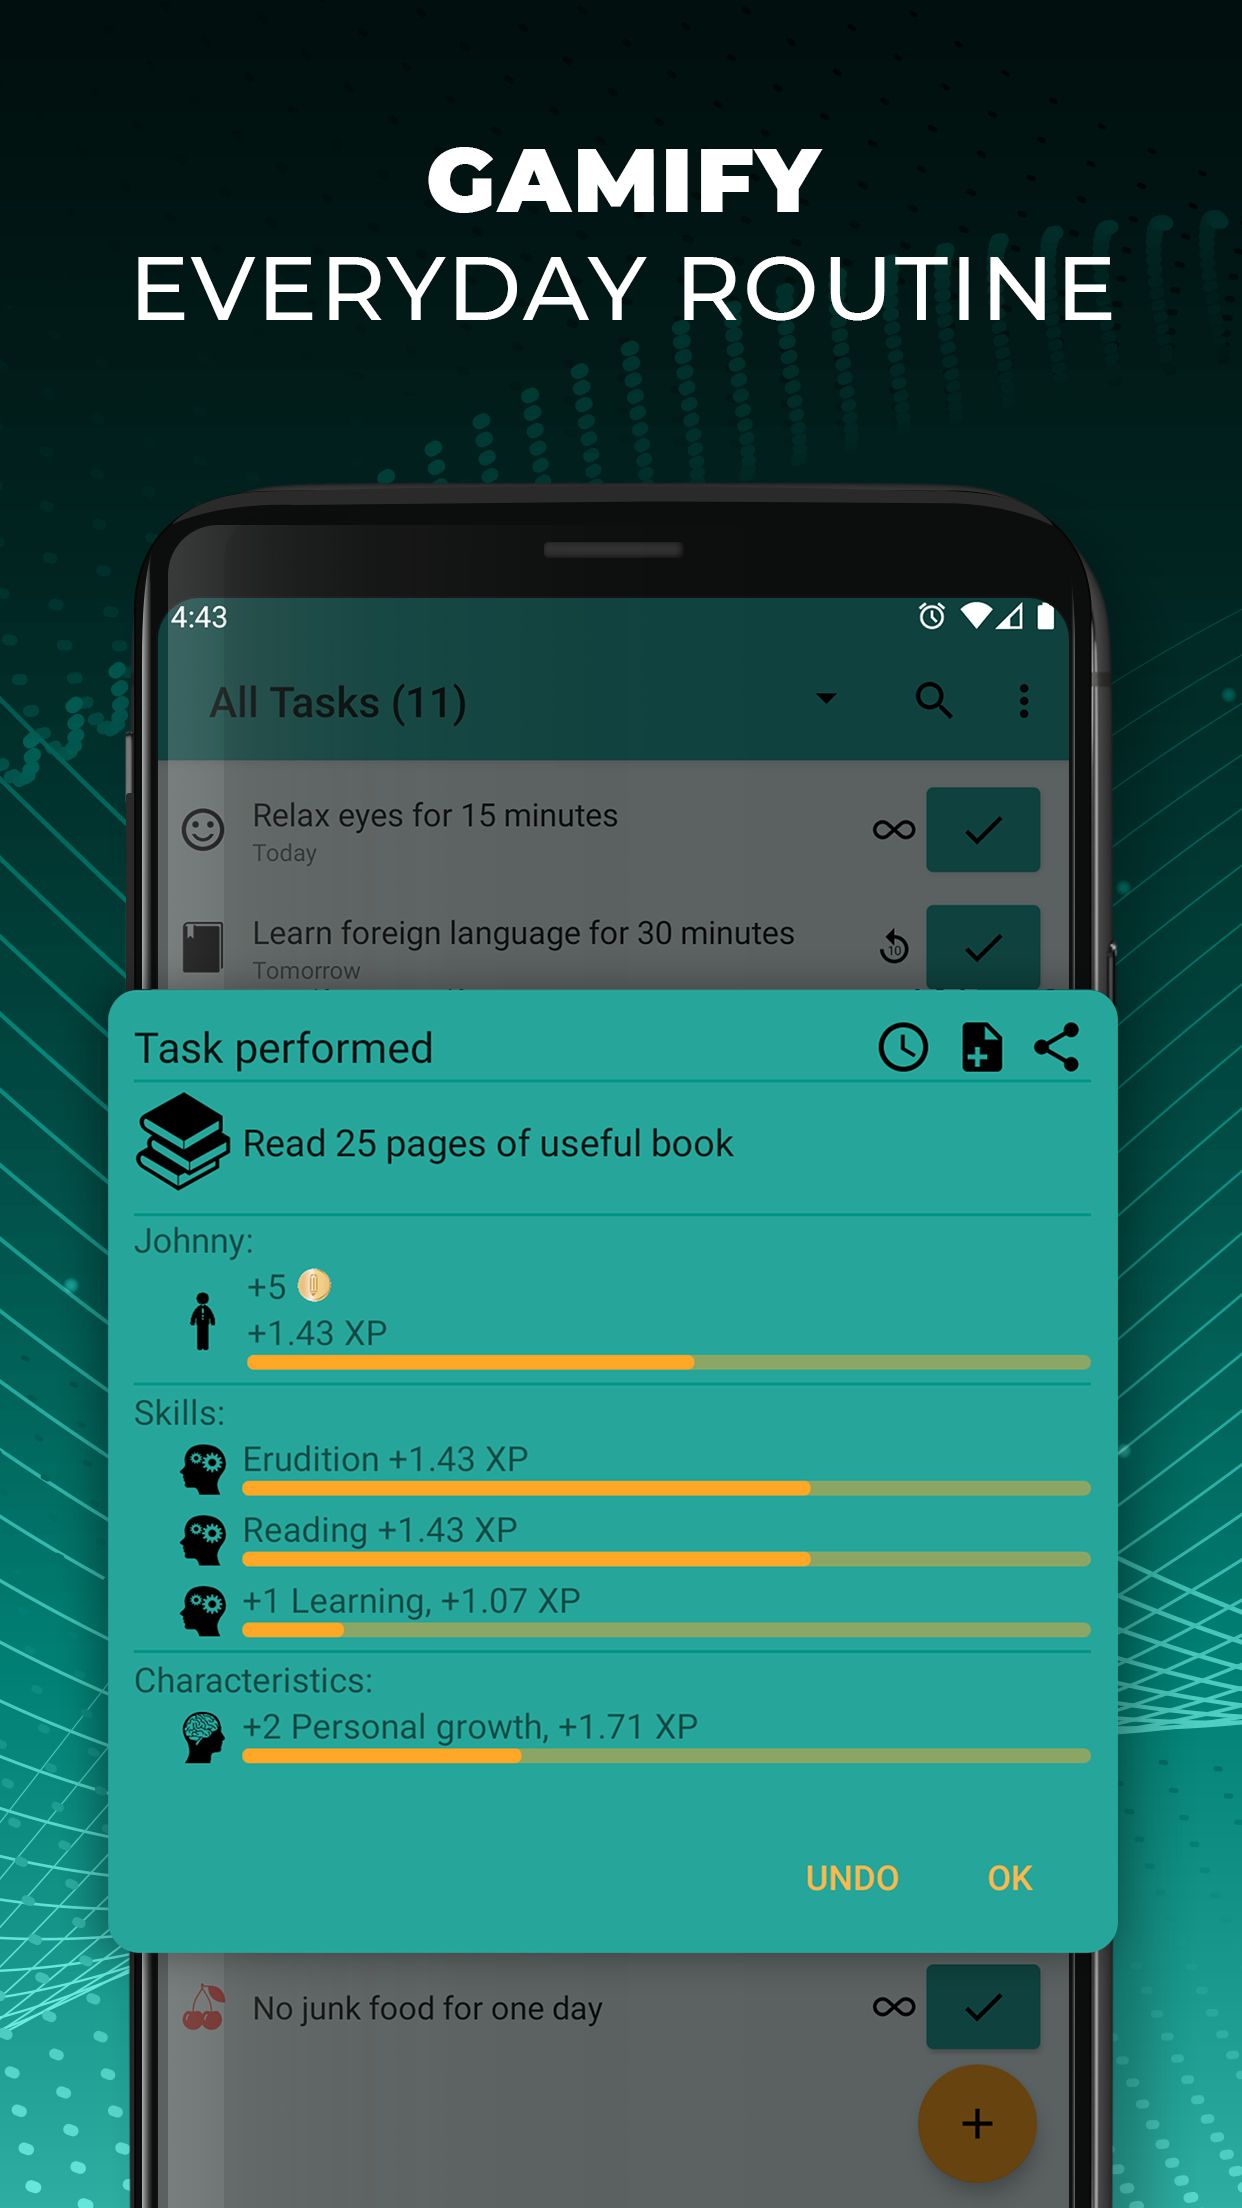 utilitas-aplikasi-terbaik-di-android-lakukan-sekarang-rpg-untuk-lakukan-daftar-gamify-rutin-sehari-hari